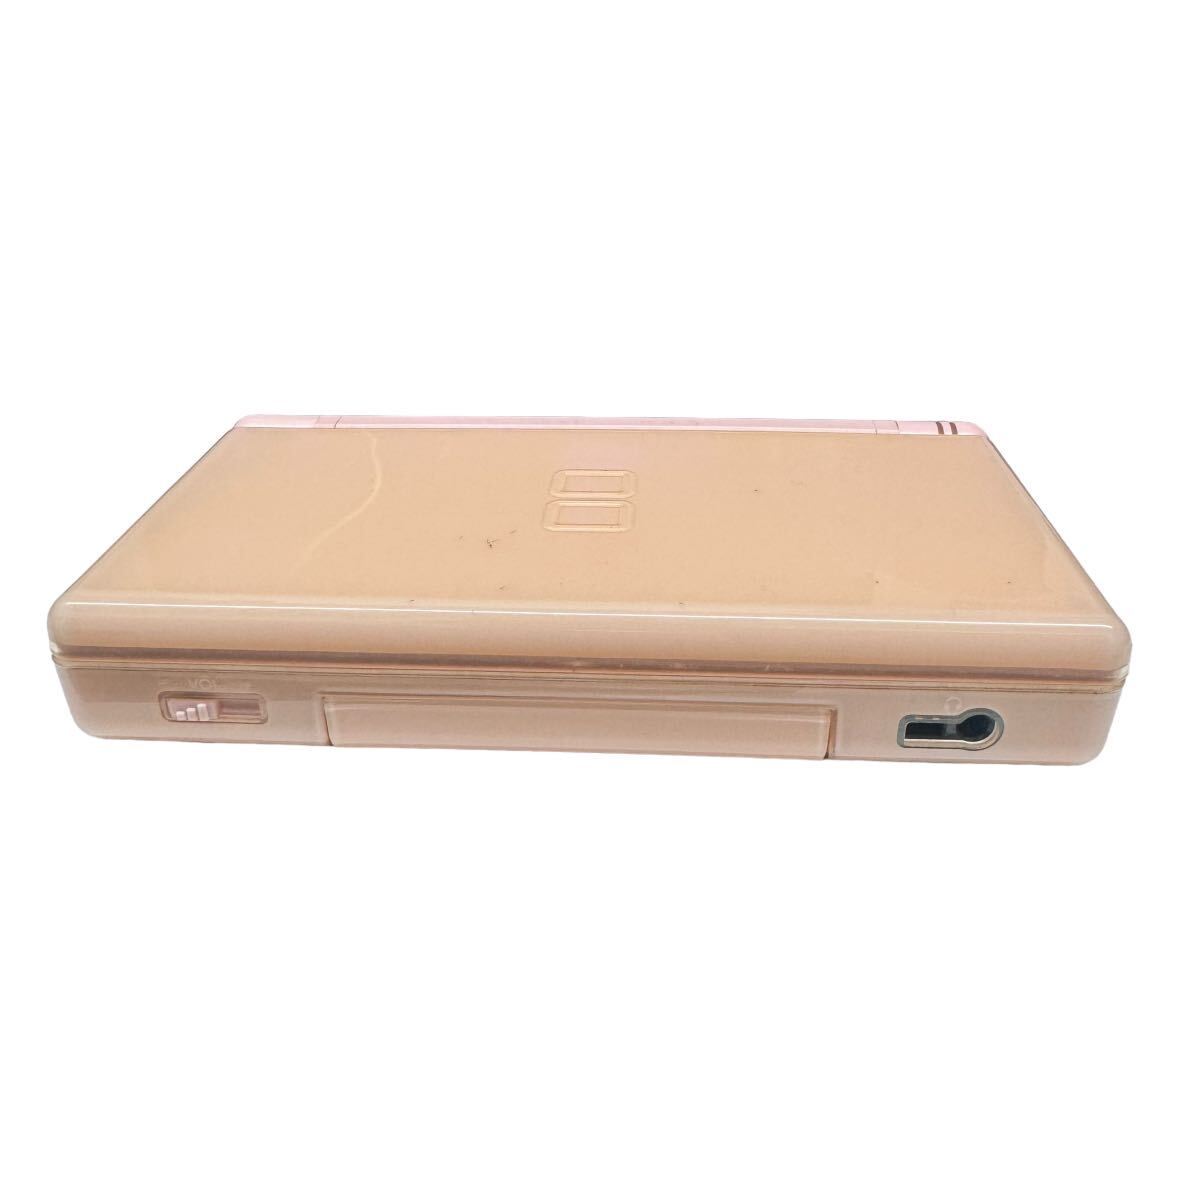 Nintendo DS Lite 任天堂 ニンテンドーDS Nintendo DS Lite USG-001 ピンク 本体 ジャンク品 どうぶつの森付属 セット販売 10161の画像3